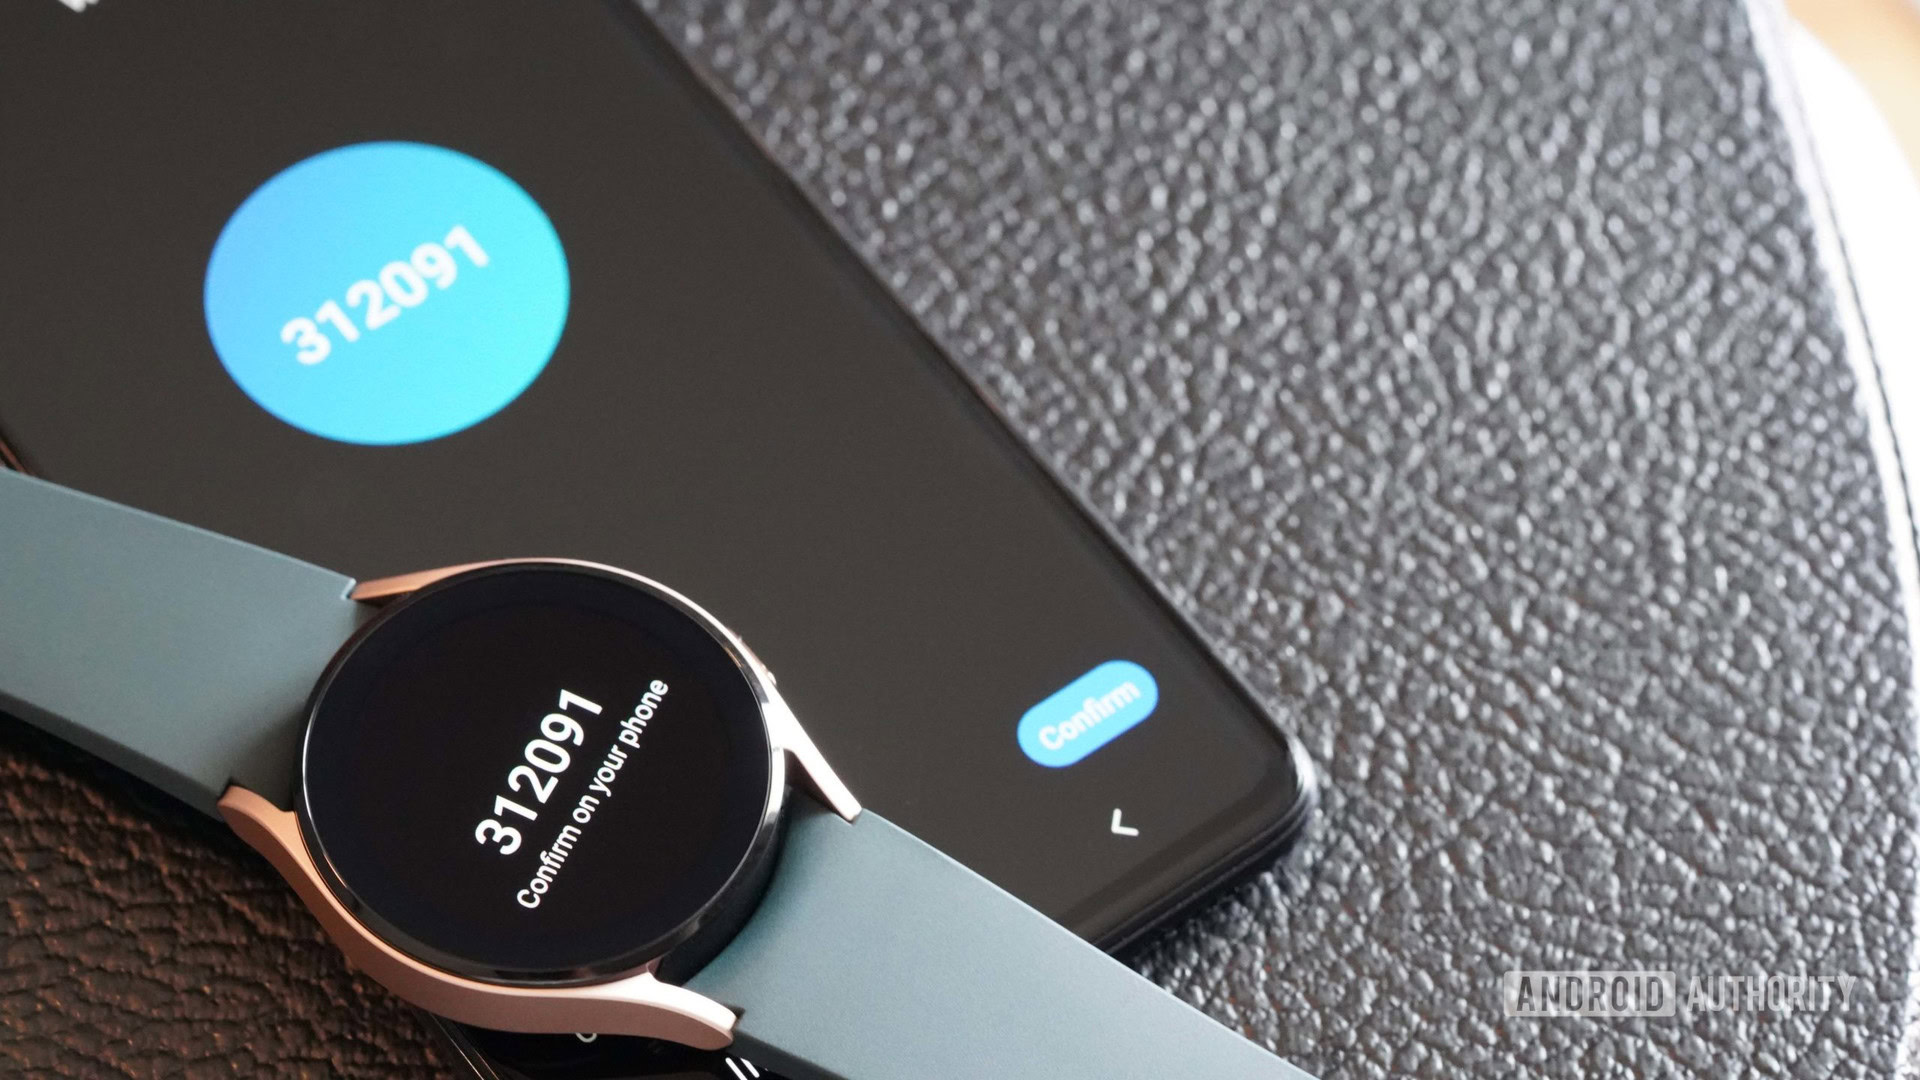 Samsung Galaxy Watch gặp vấn đề? Hãy coi hình ảnh để tìm hiểu về những lỗi thường gặp của chiếc đồng hồ thông minh này và cách khắc phục chúng để trải nghiệm tốt hơn.